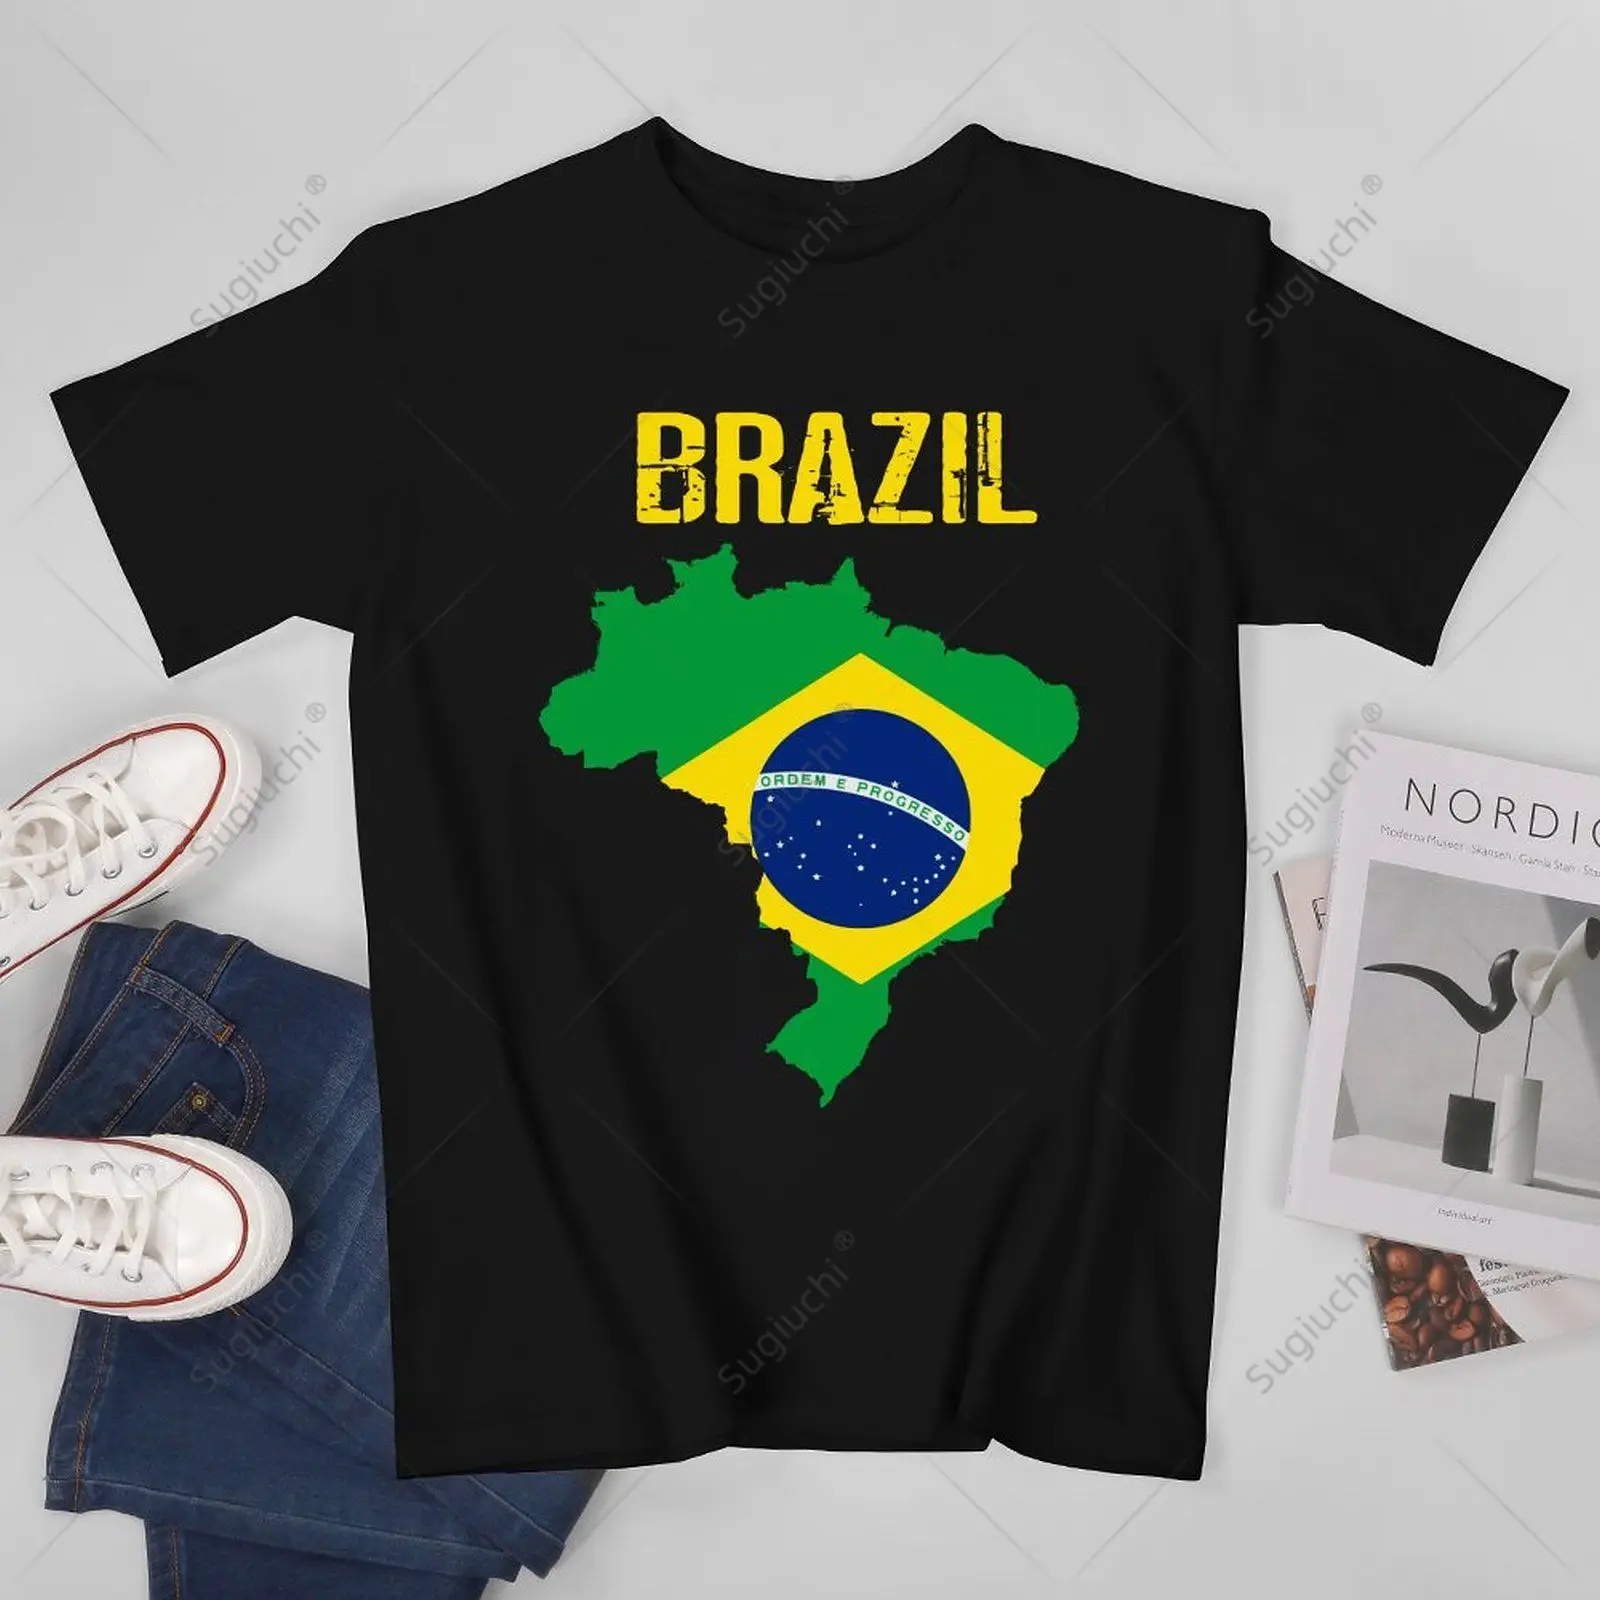 Унисекс, мужчины, Бразилия, флаг Бразилии, Бразилия, футболки, футболки для женщин, футболки для мальчиков из 100% хлопка